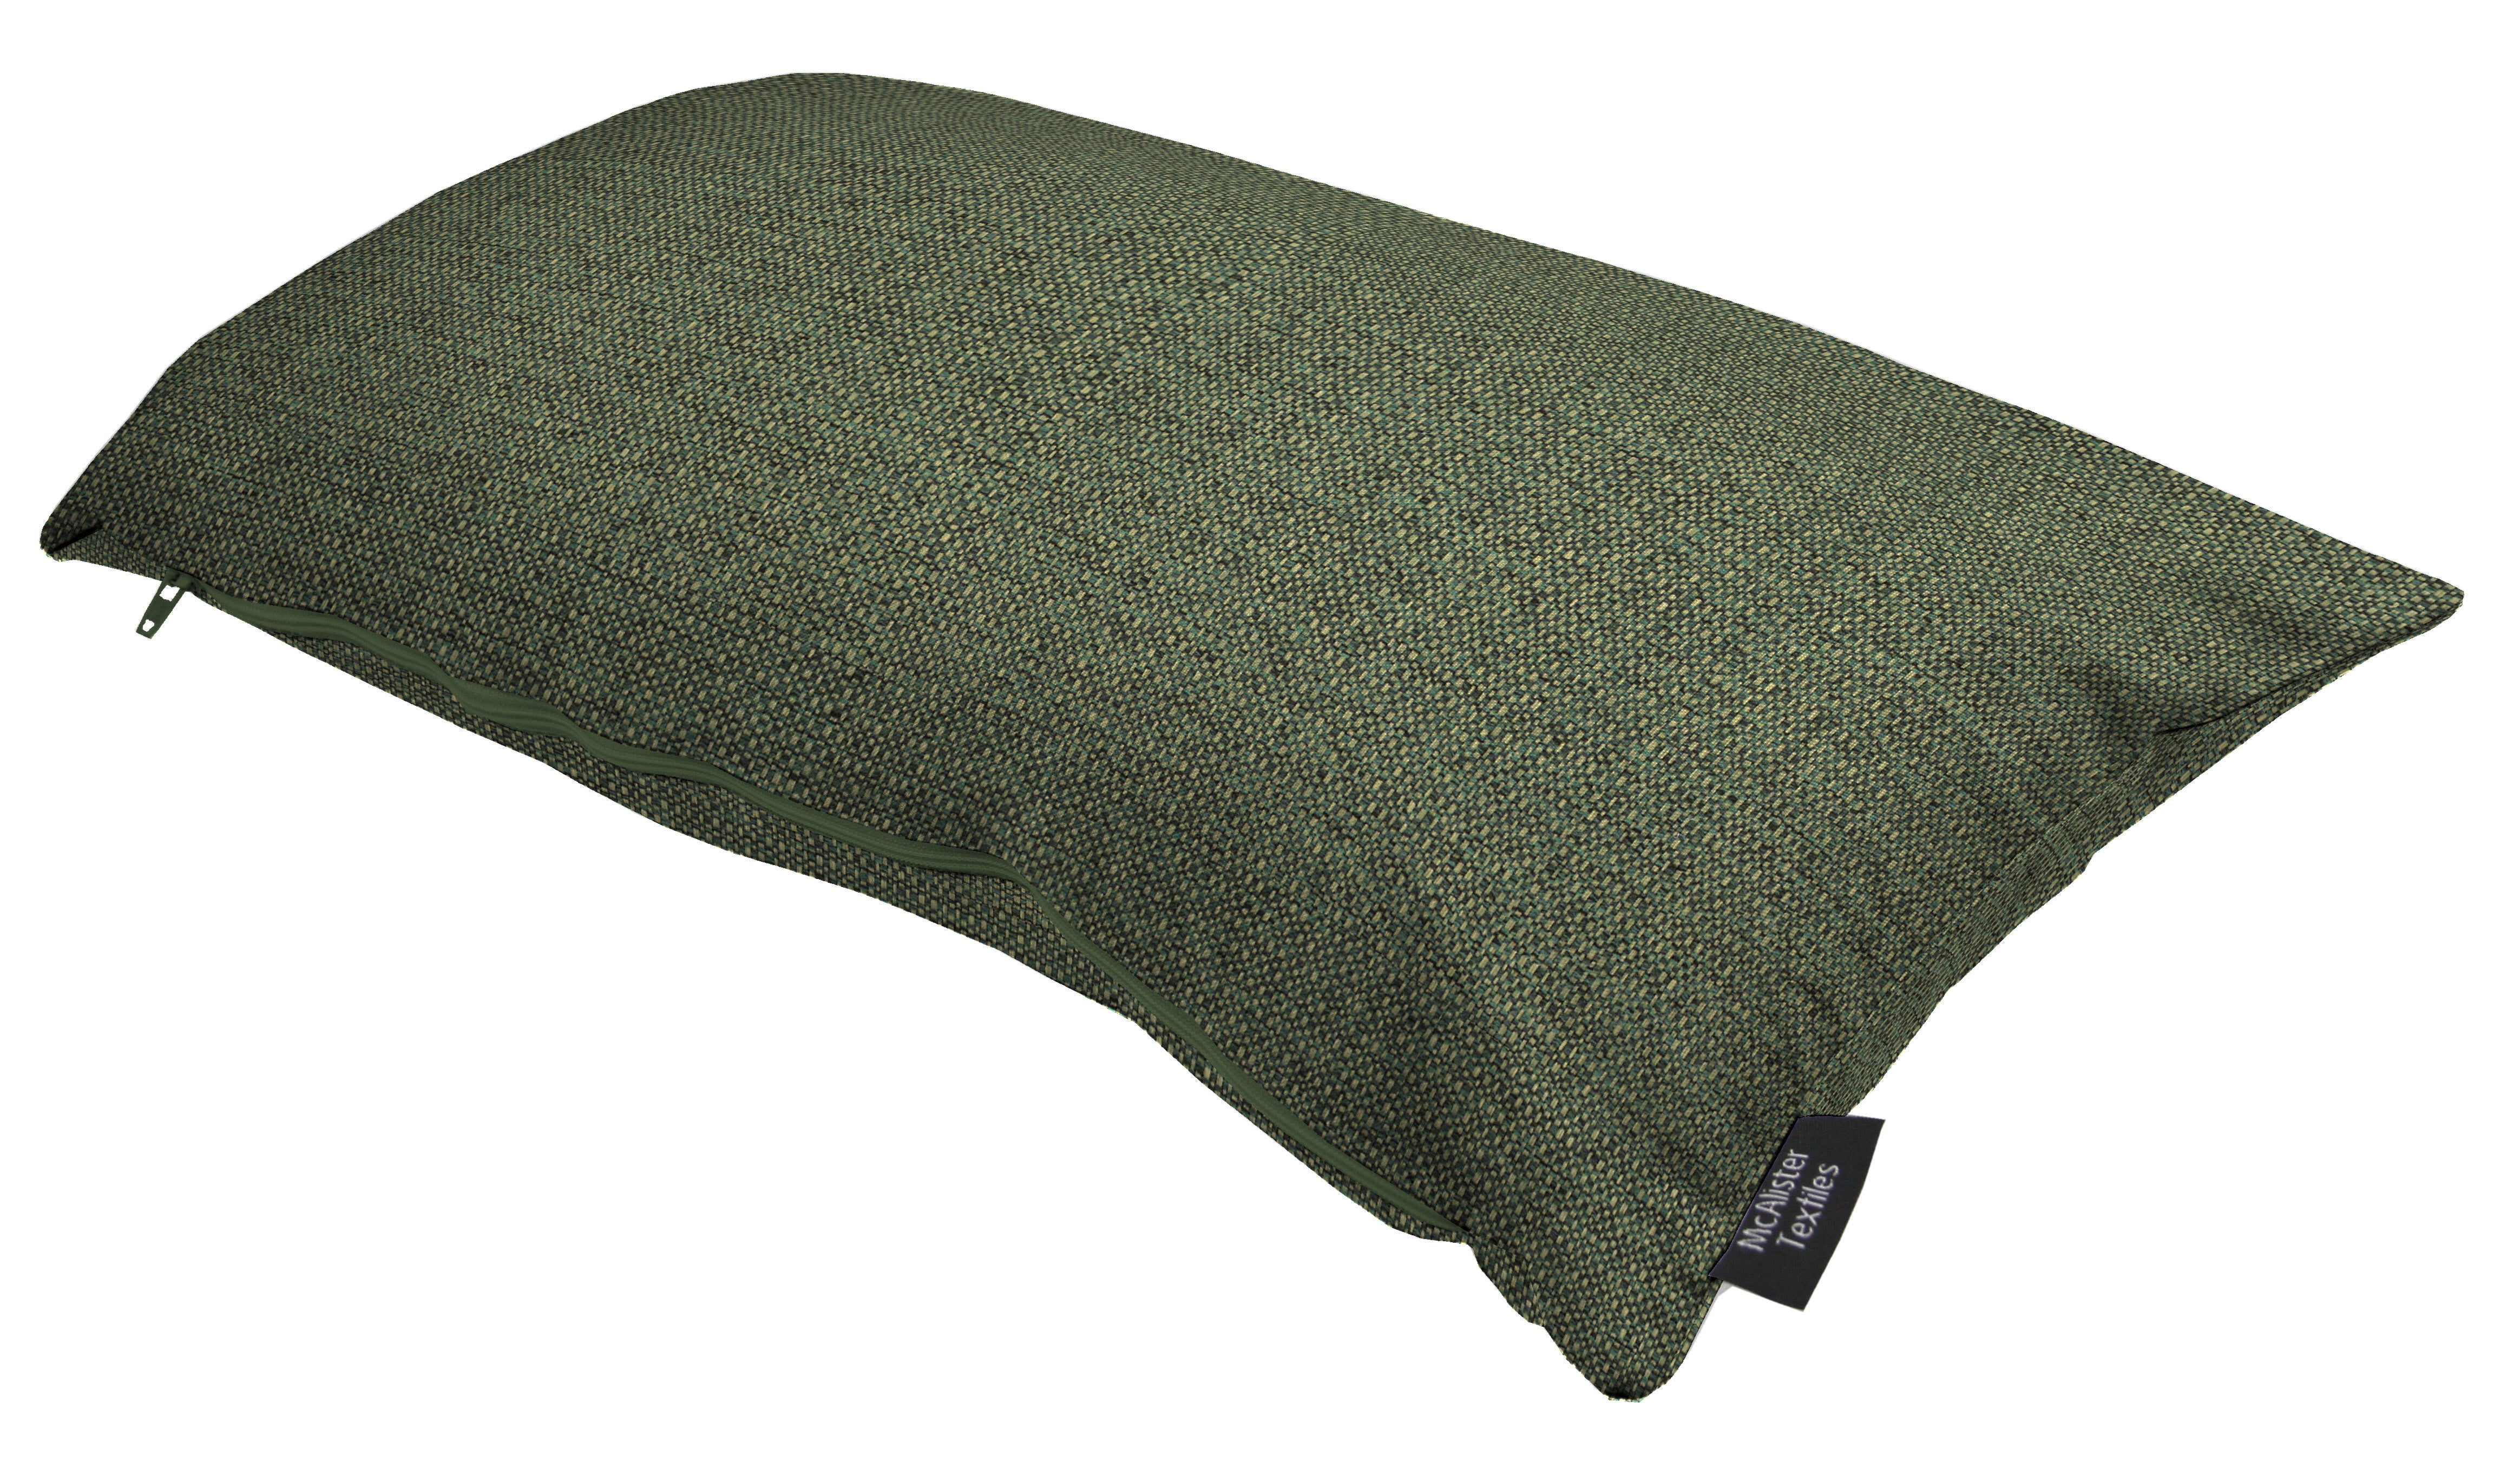 Roma Green Woven Cushion